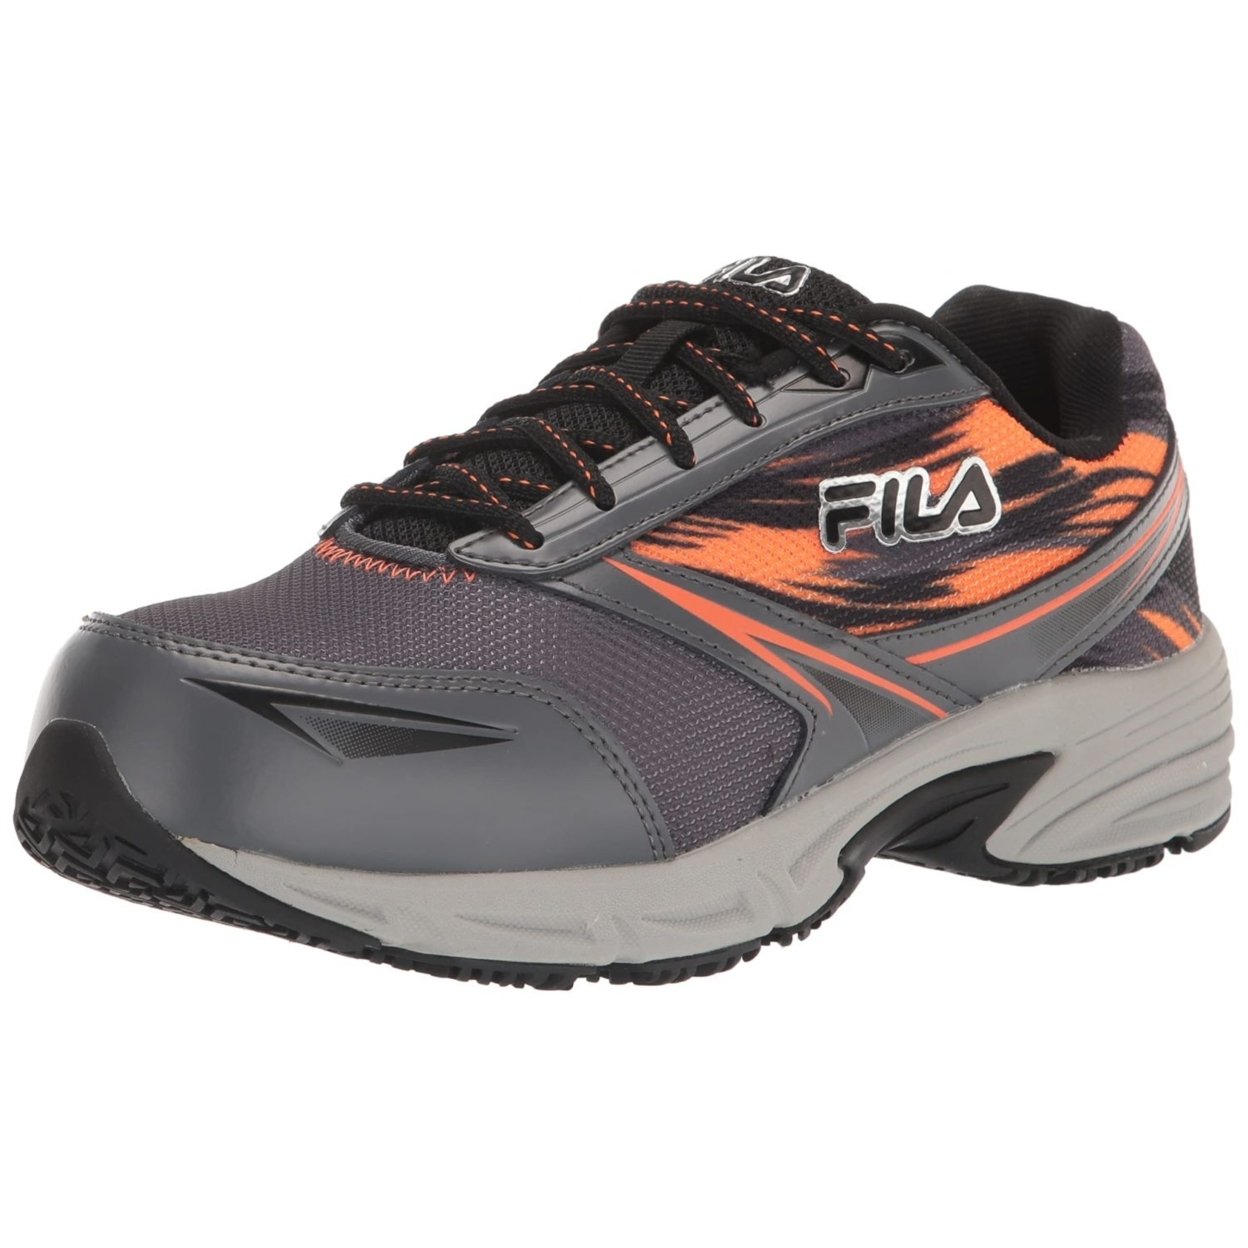 Fila Menâs Memory Meiera 2 Slip Resistant And Composite Toe Work Shoe CSRK/BLK/VORN - Castlerock/Black/Vibrant Orange, 13